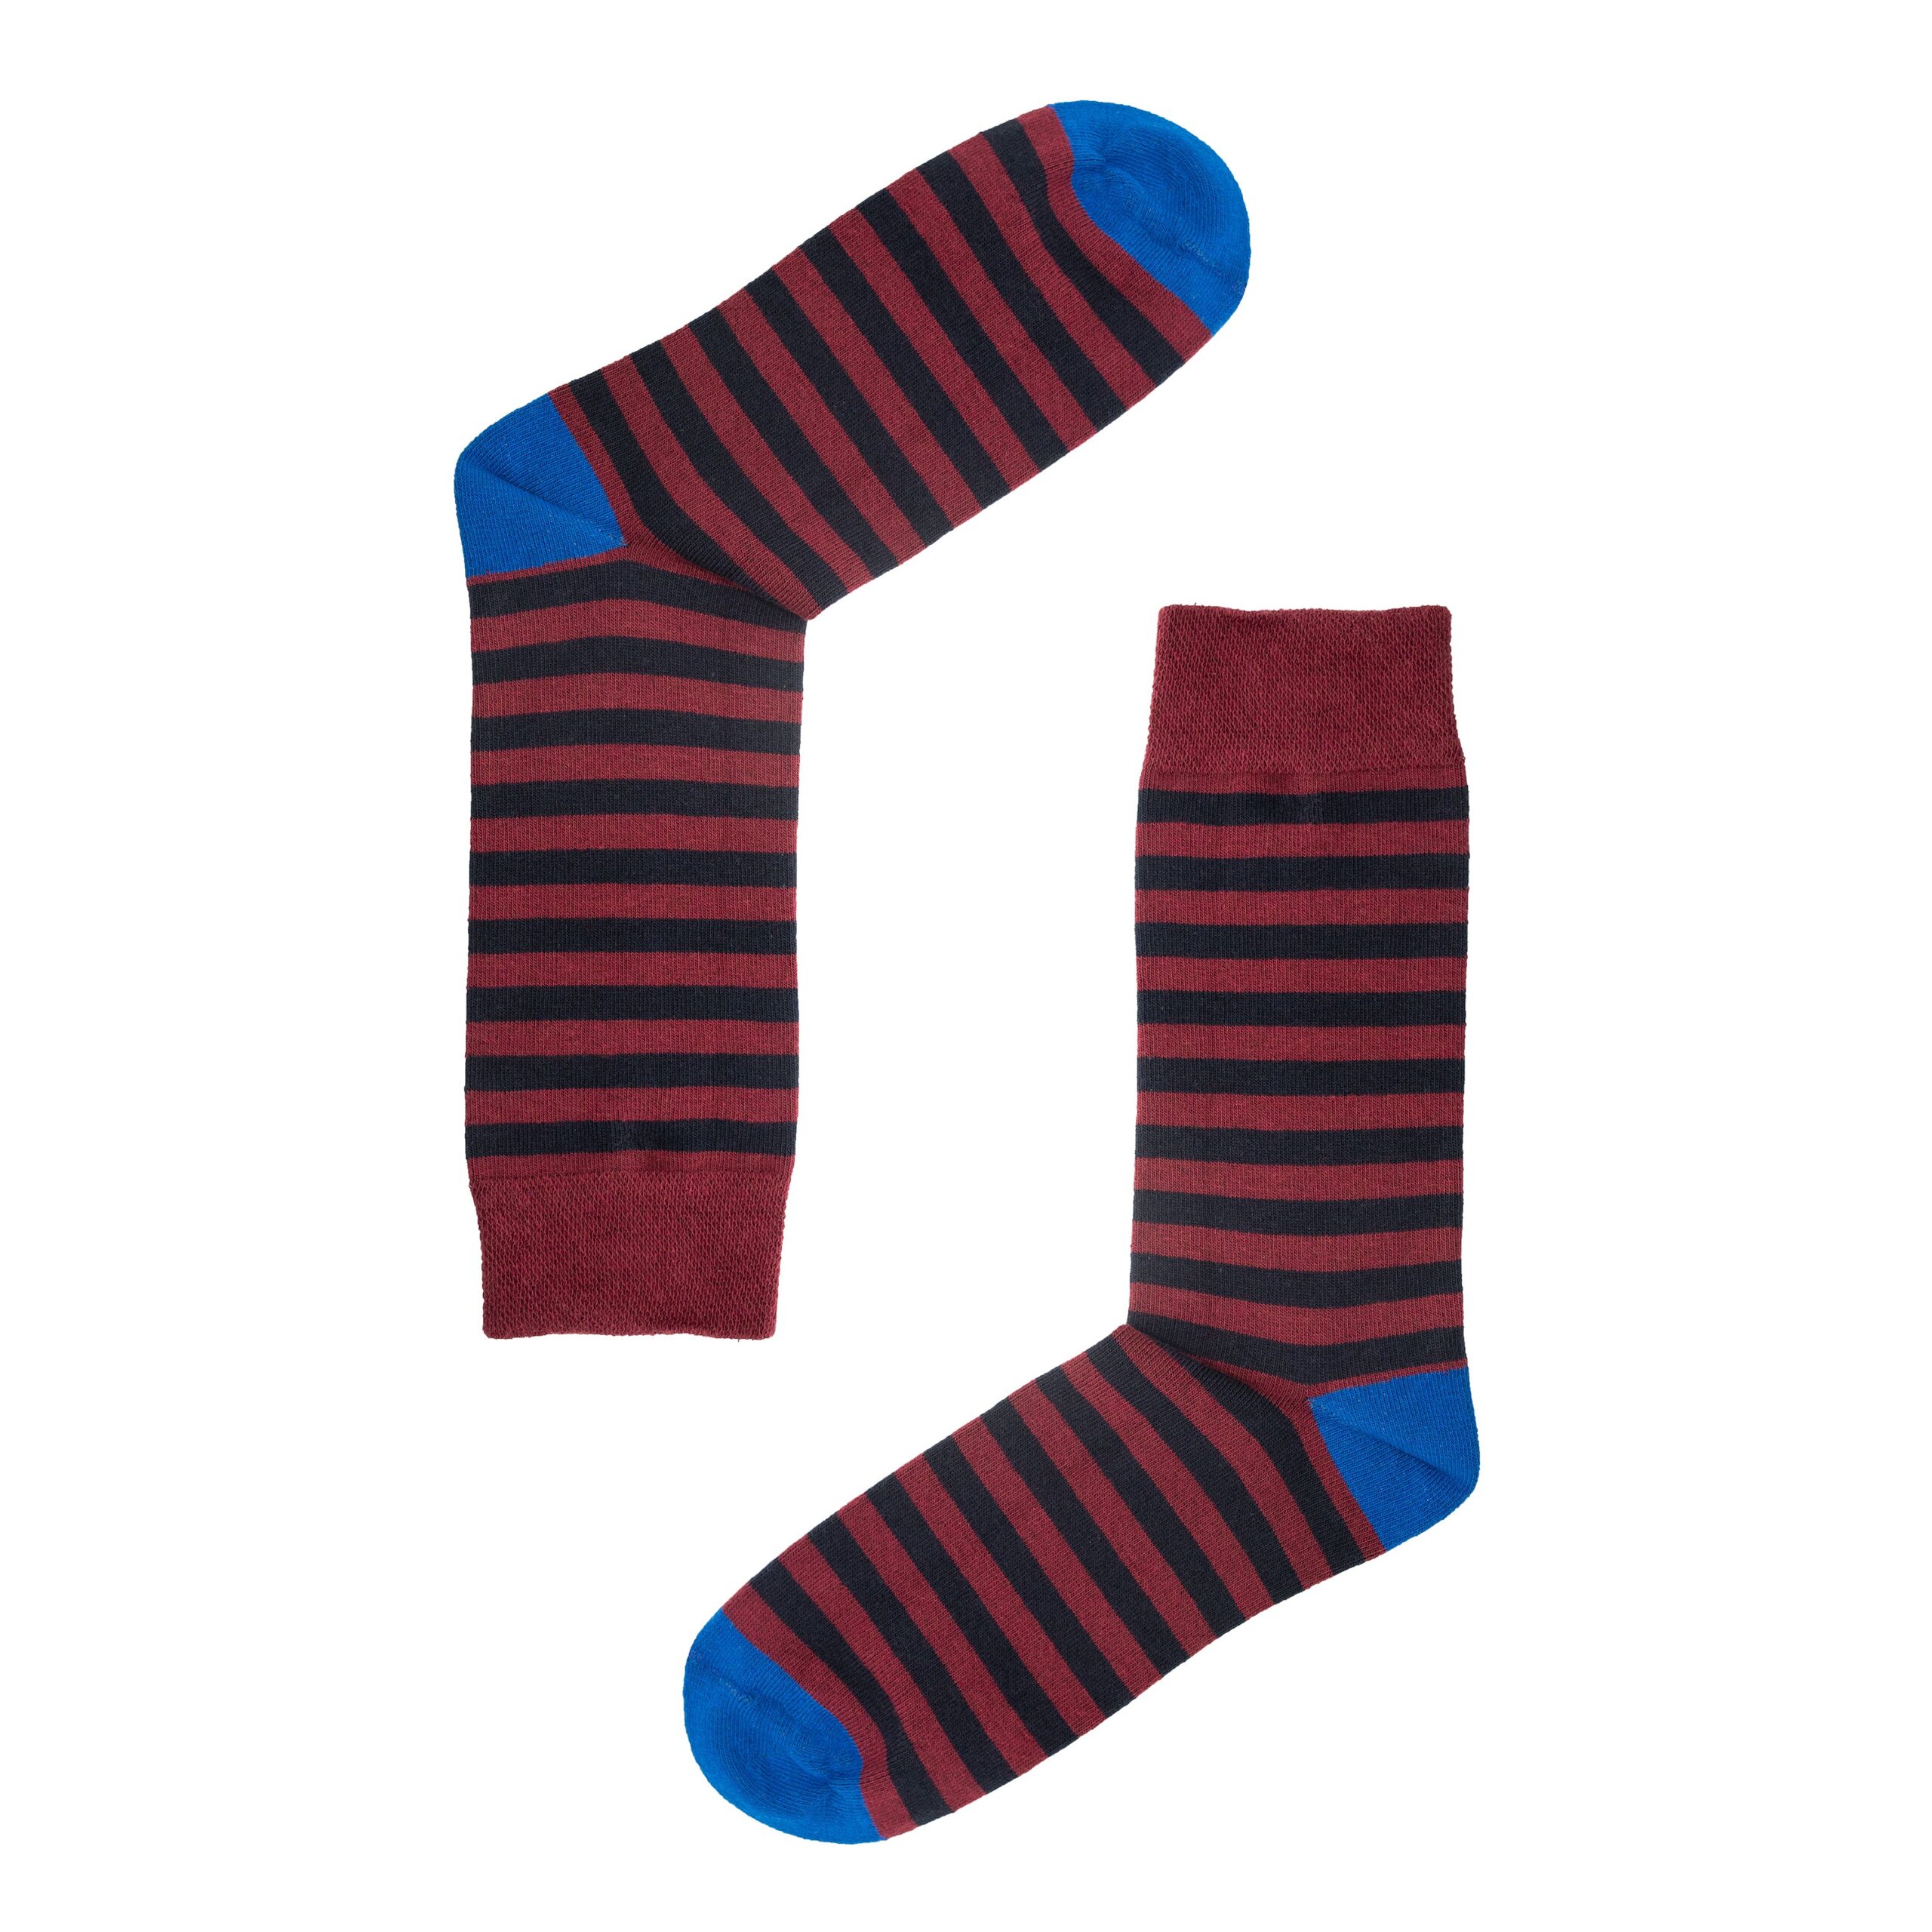 Jemsox Burgundy & Black Stripe Socks